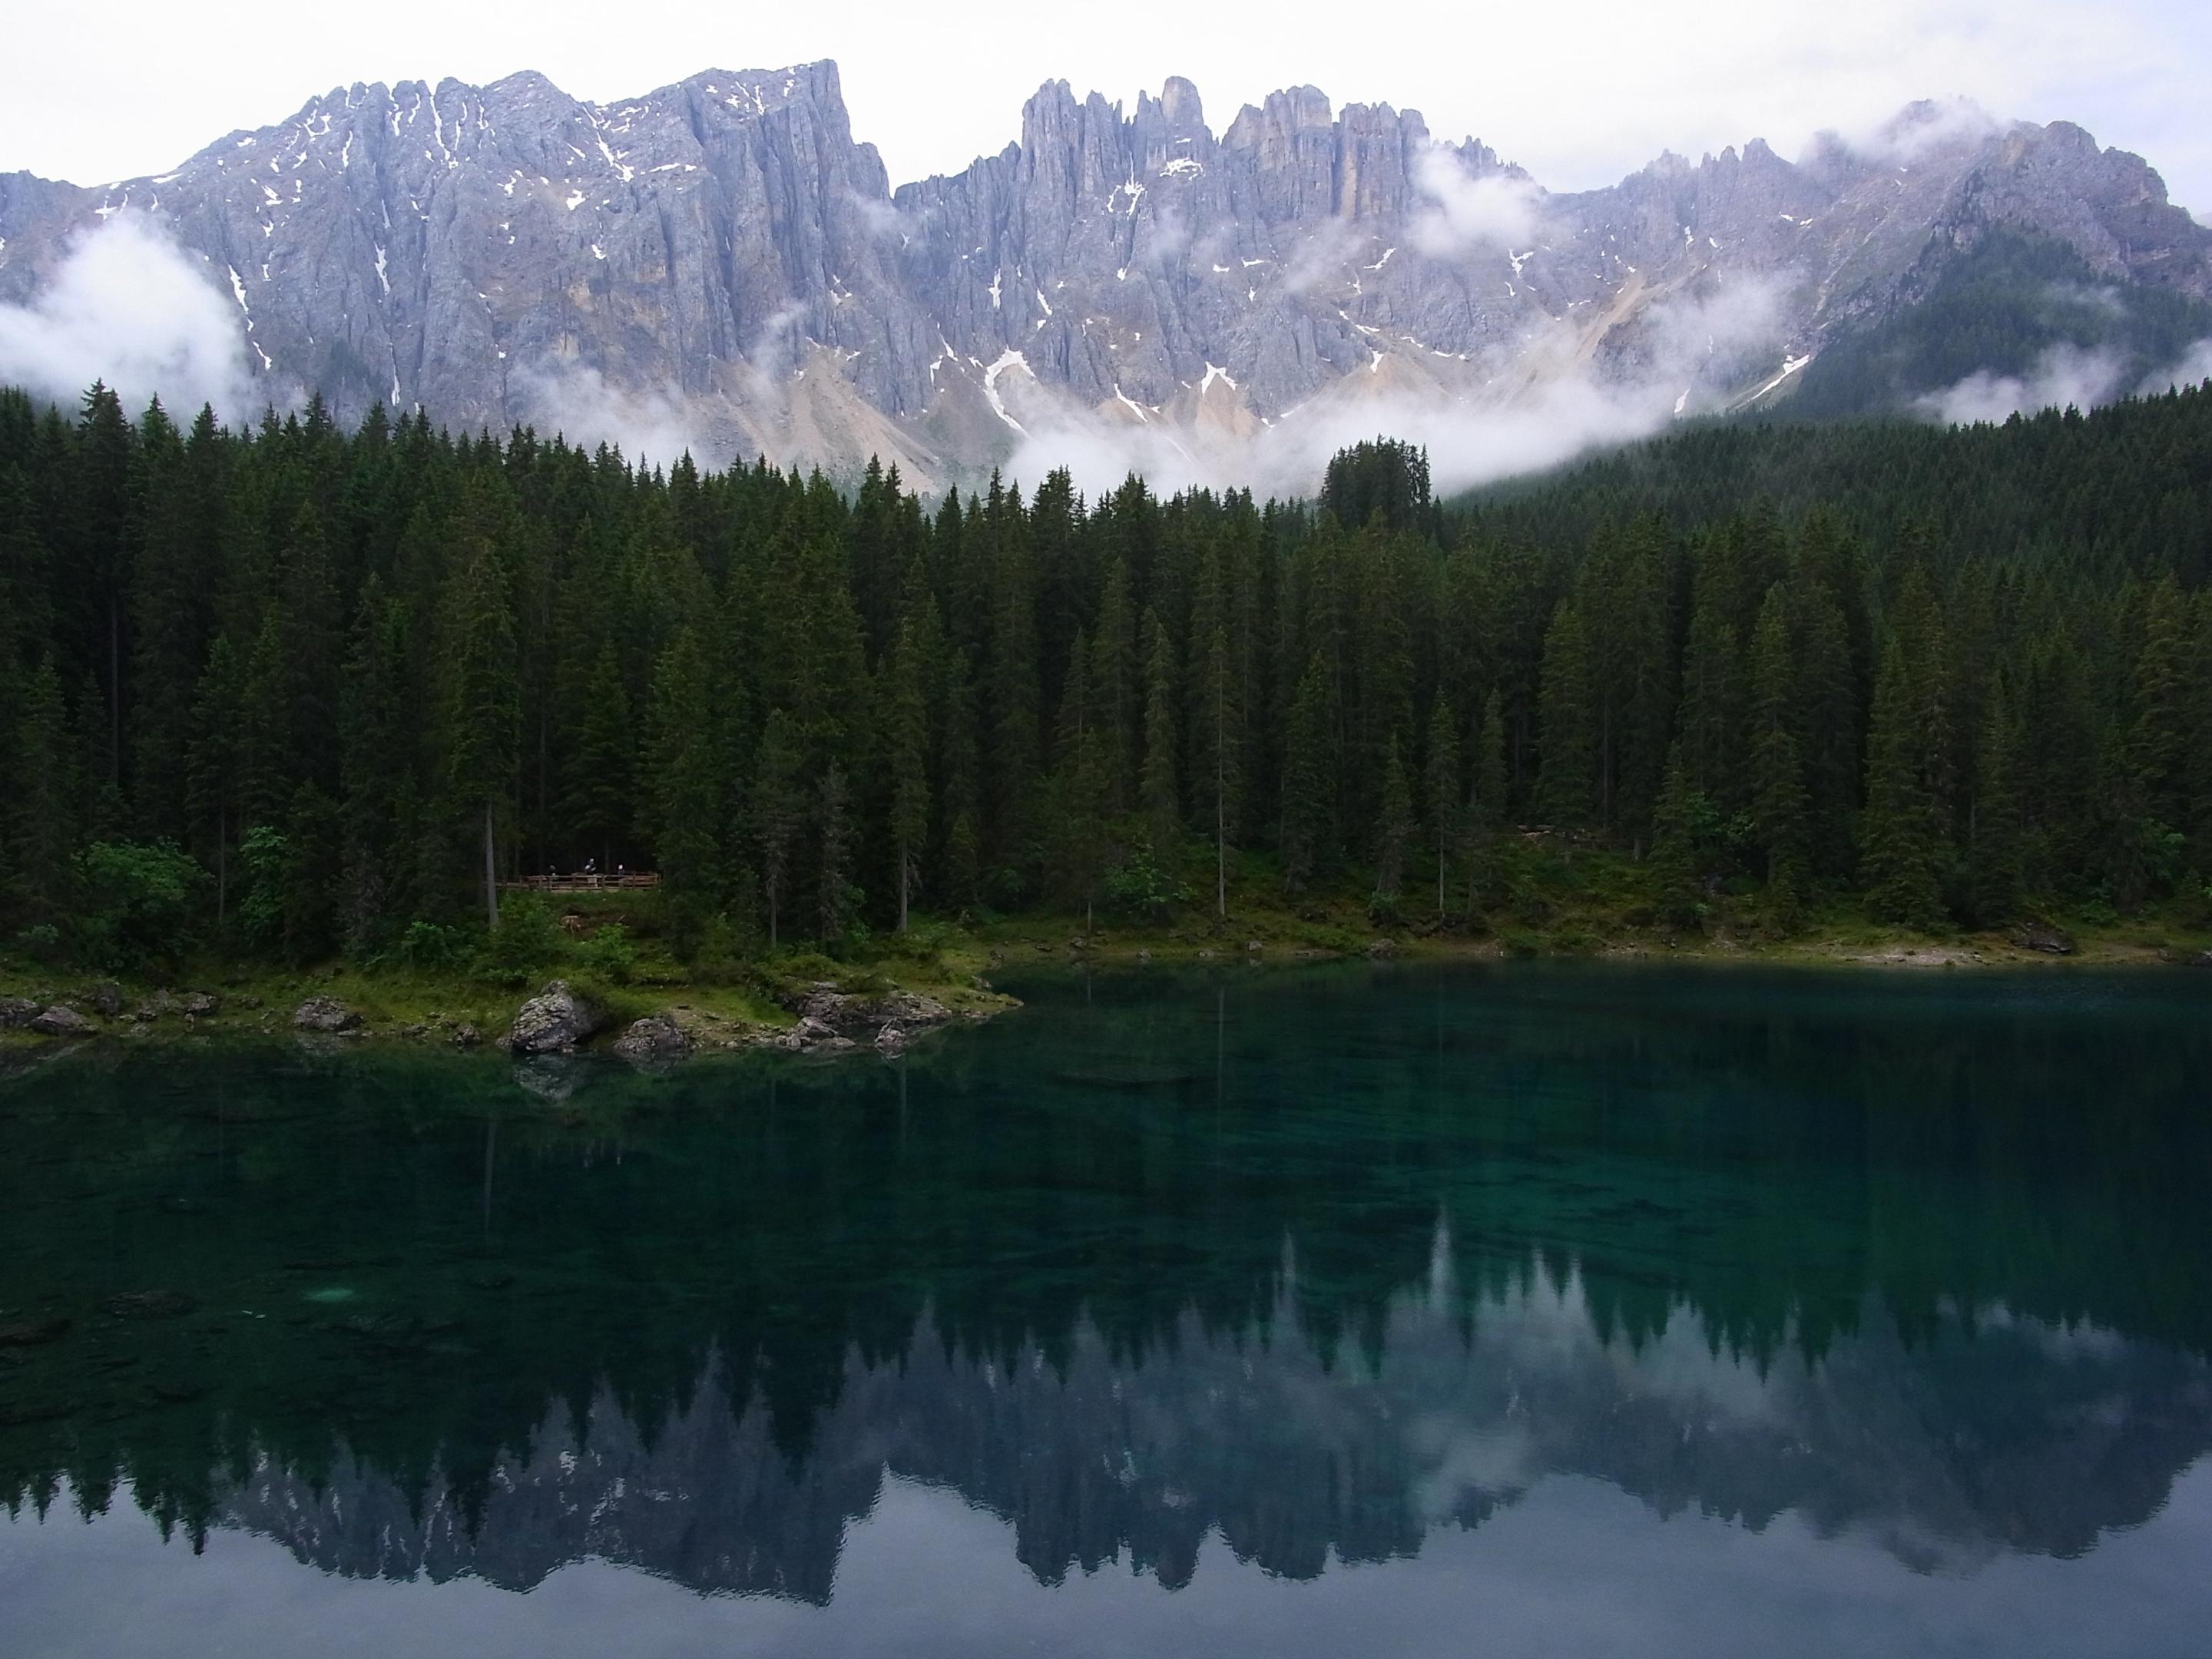 Südtirol - Dolomiten: 5 Tage Hüttentour durch den Südtiroler Rosengarten - ein Reisebericht